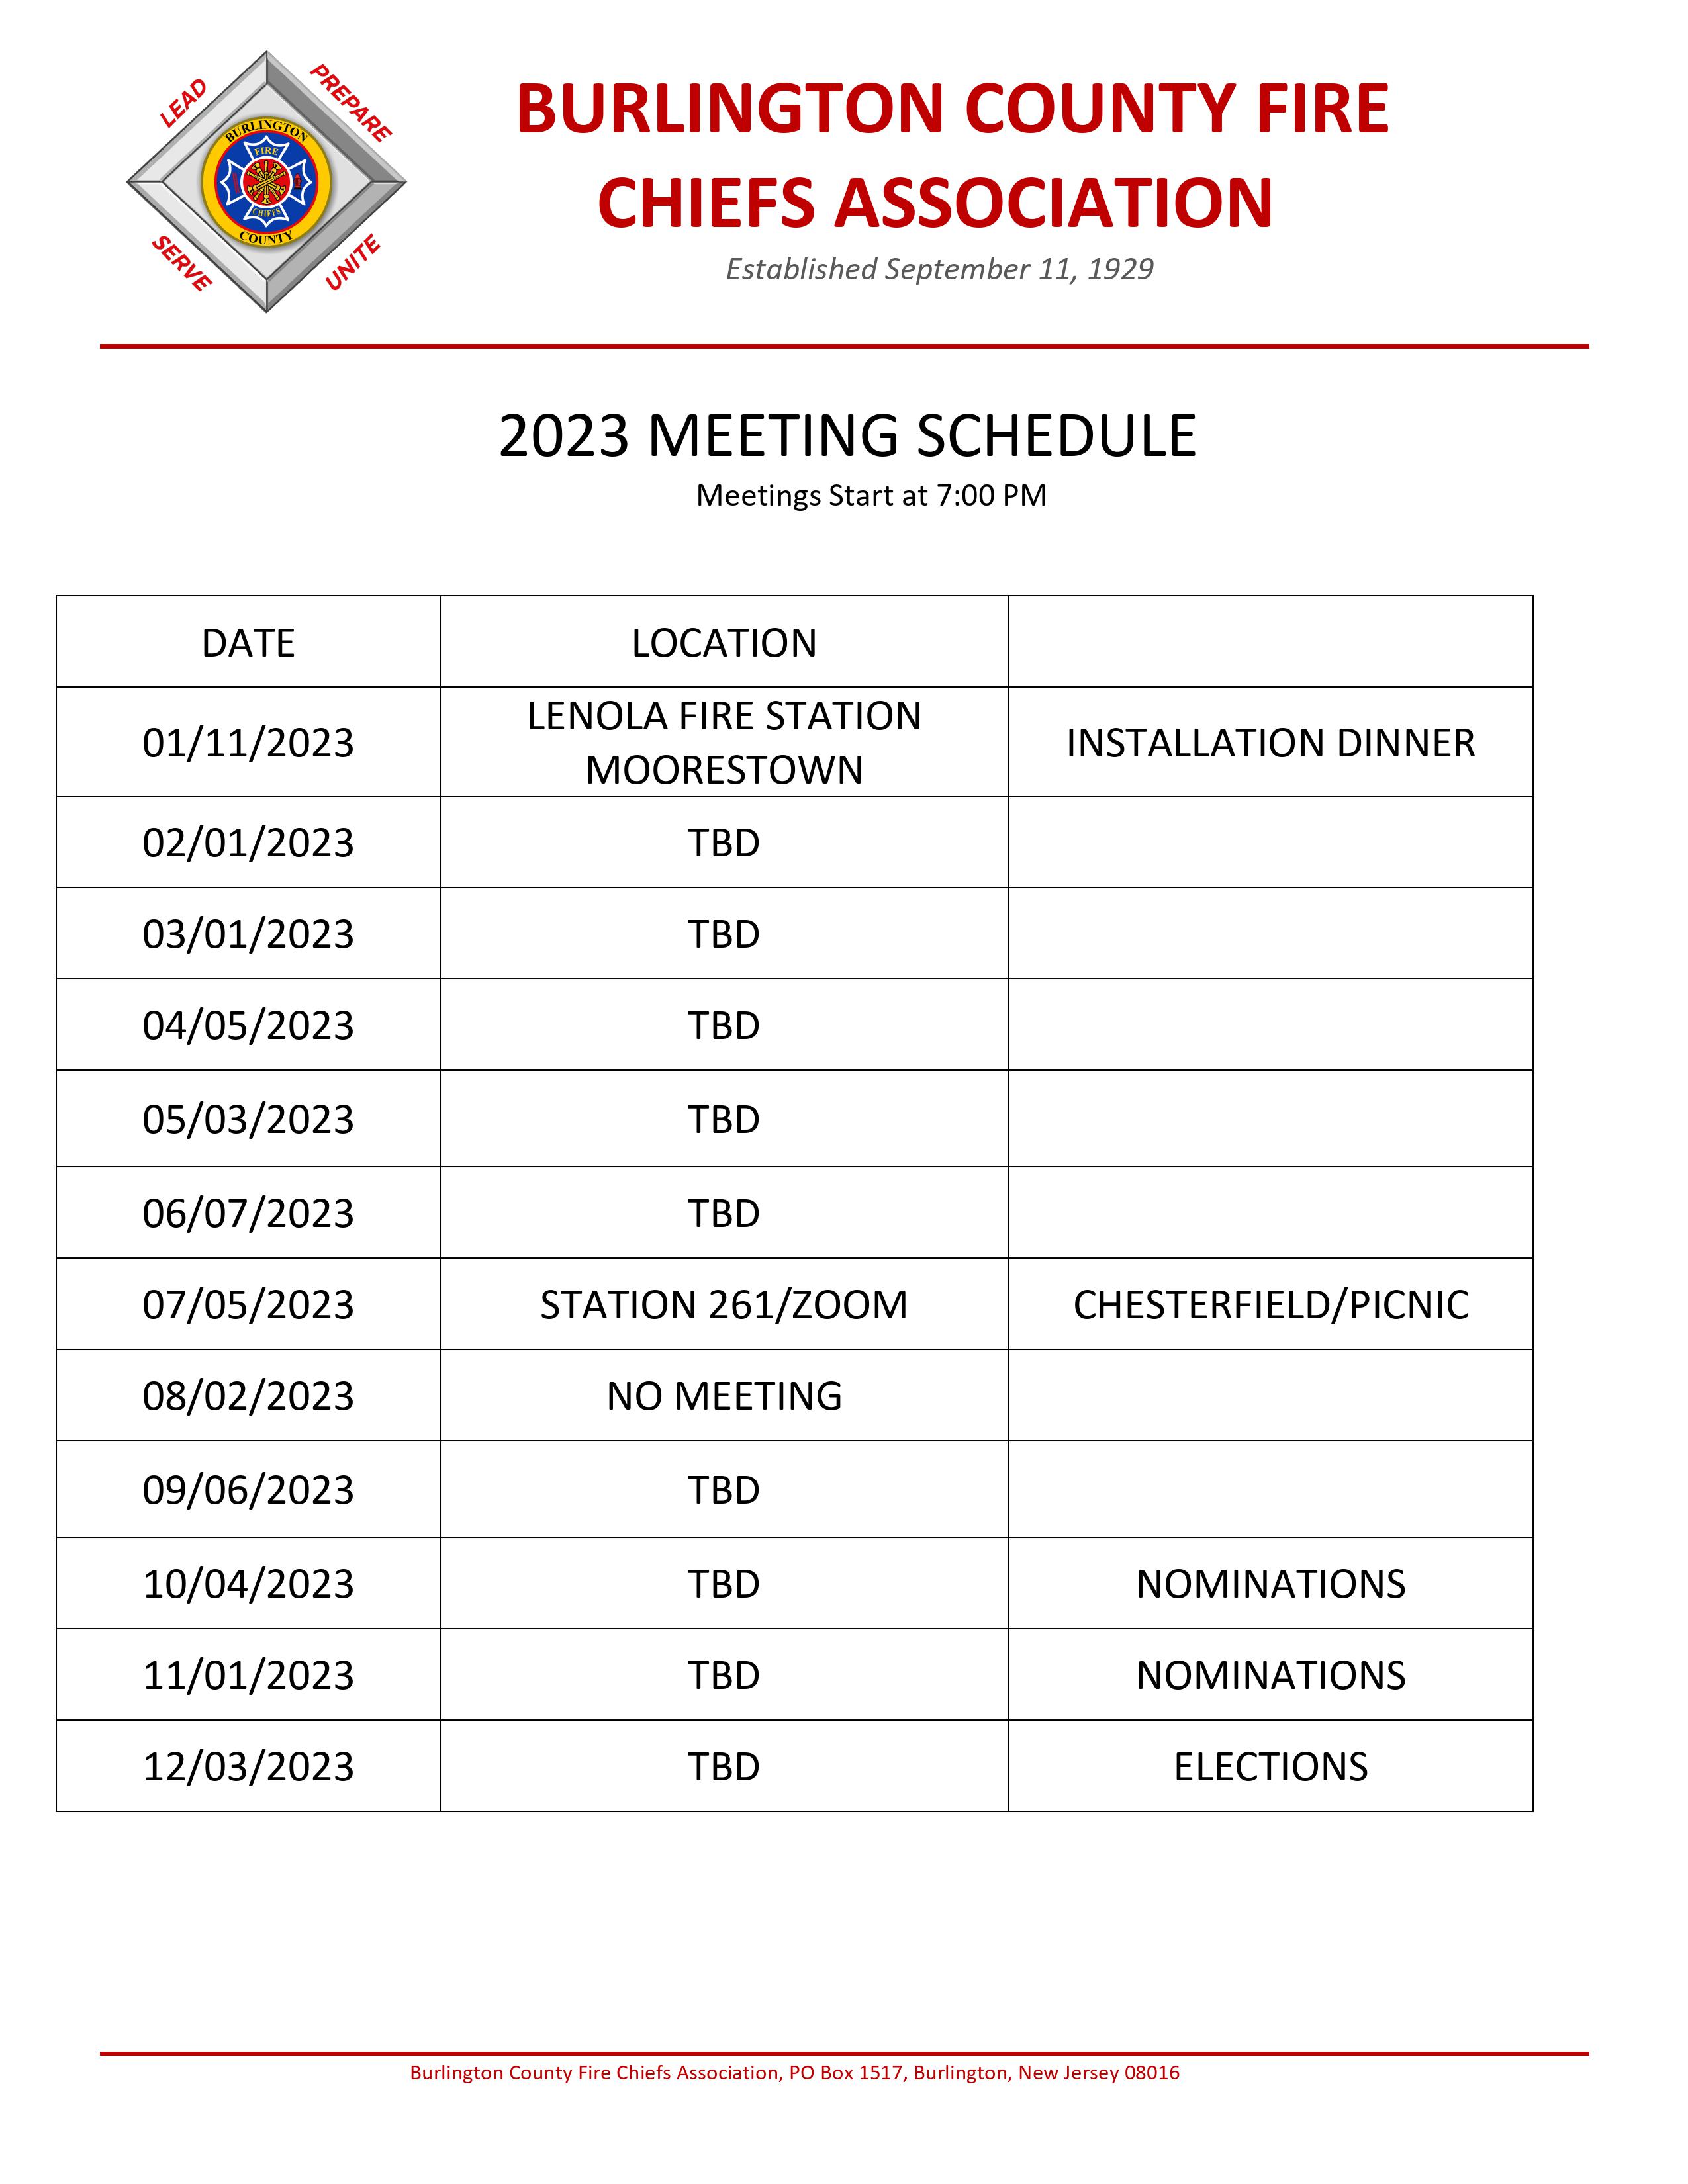 2023 Meeting Schedule